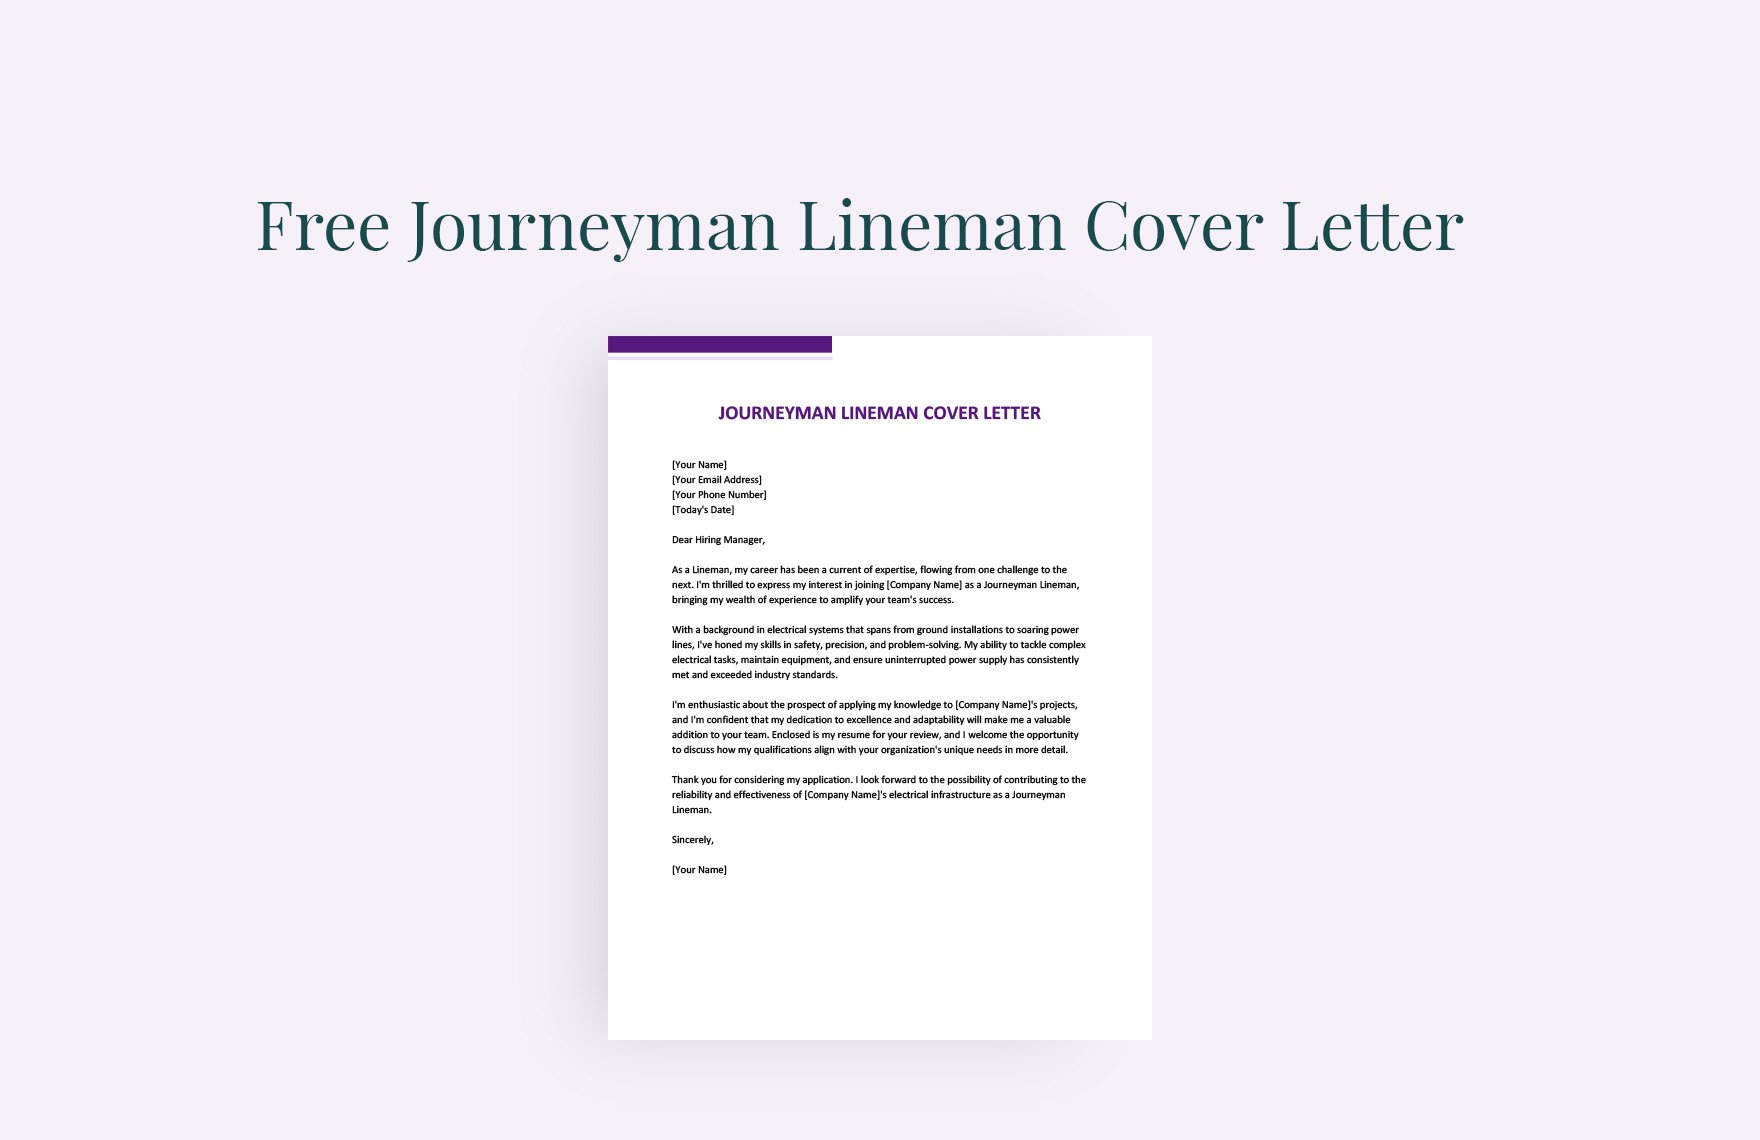 Journeyman Lineman Cover Letter